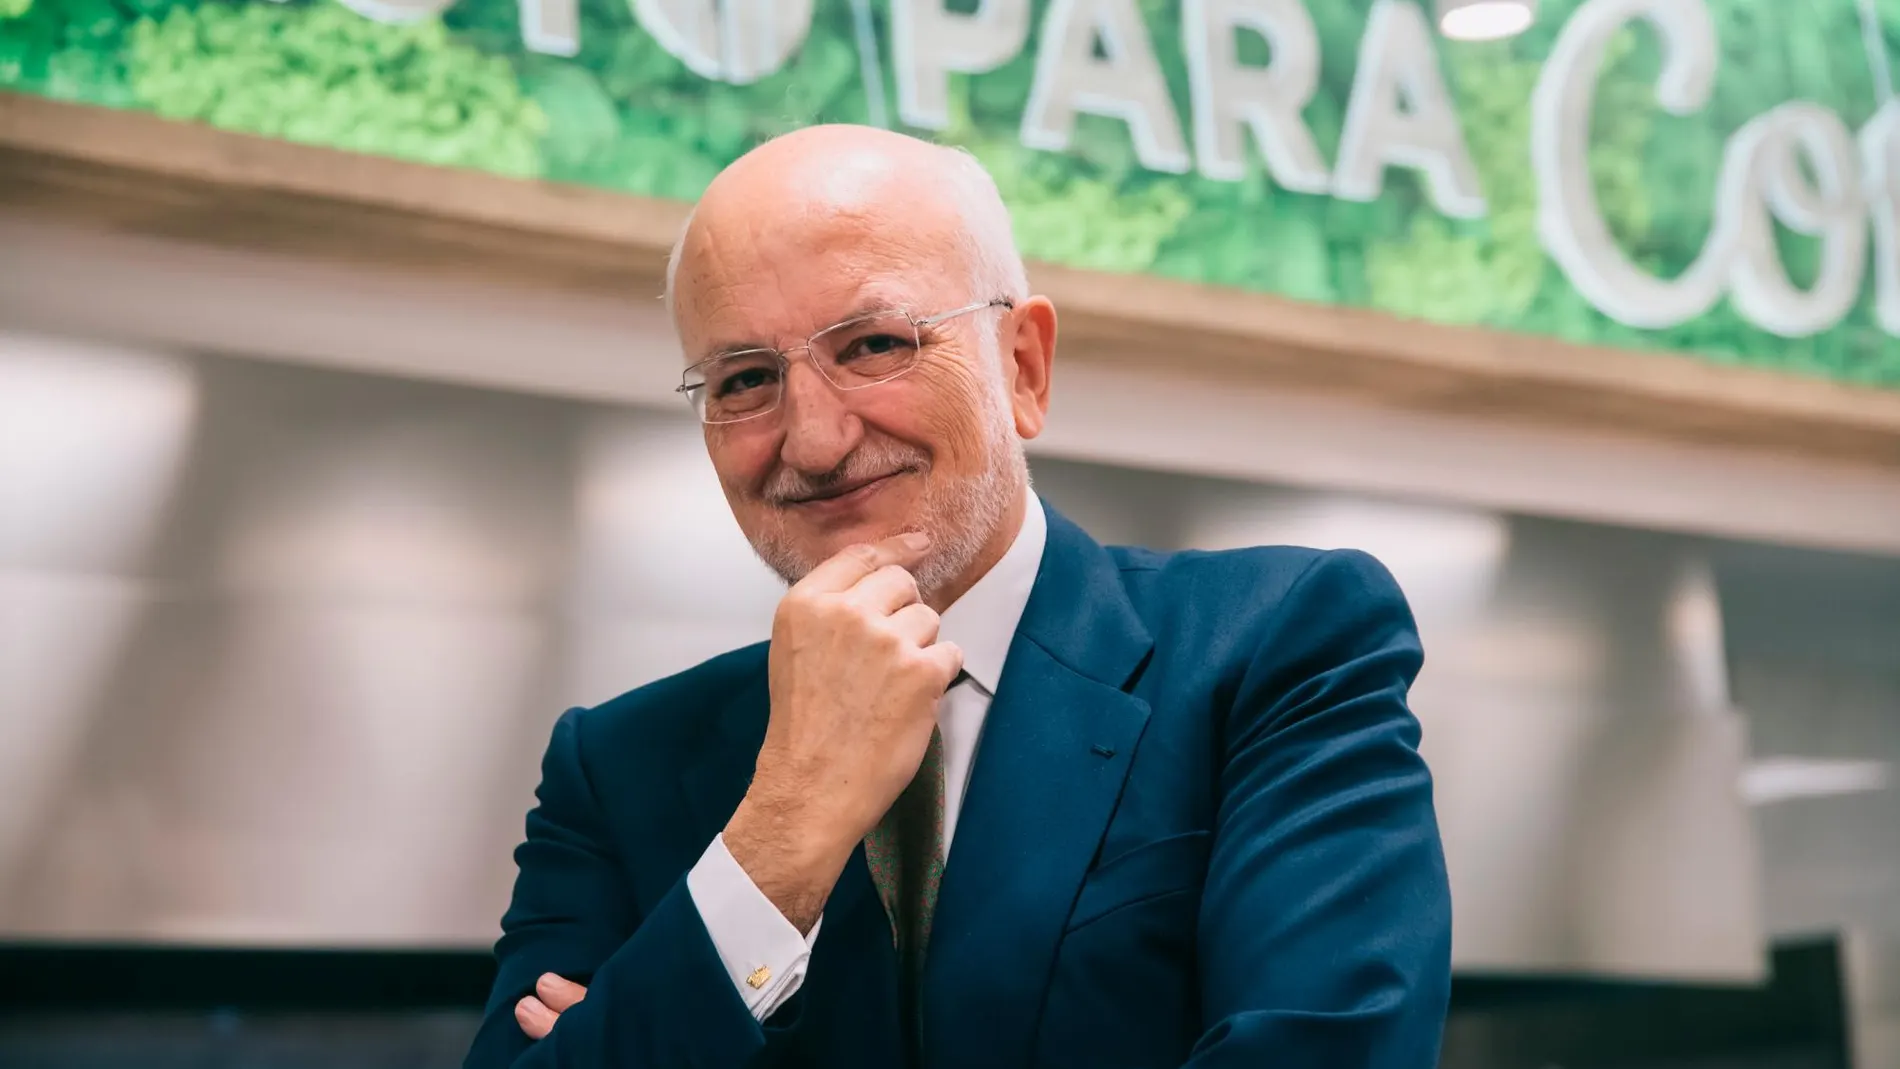 El presidente de Mercadona, Juan Roig, ha pesentado hoy los resultados de Mercadona en 2019